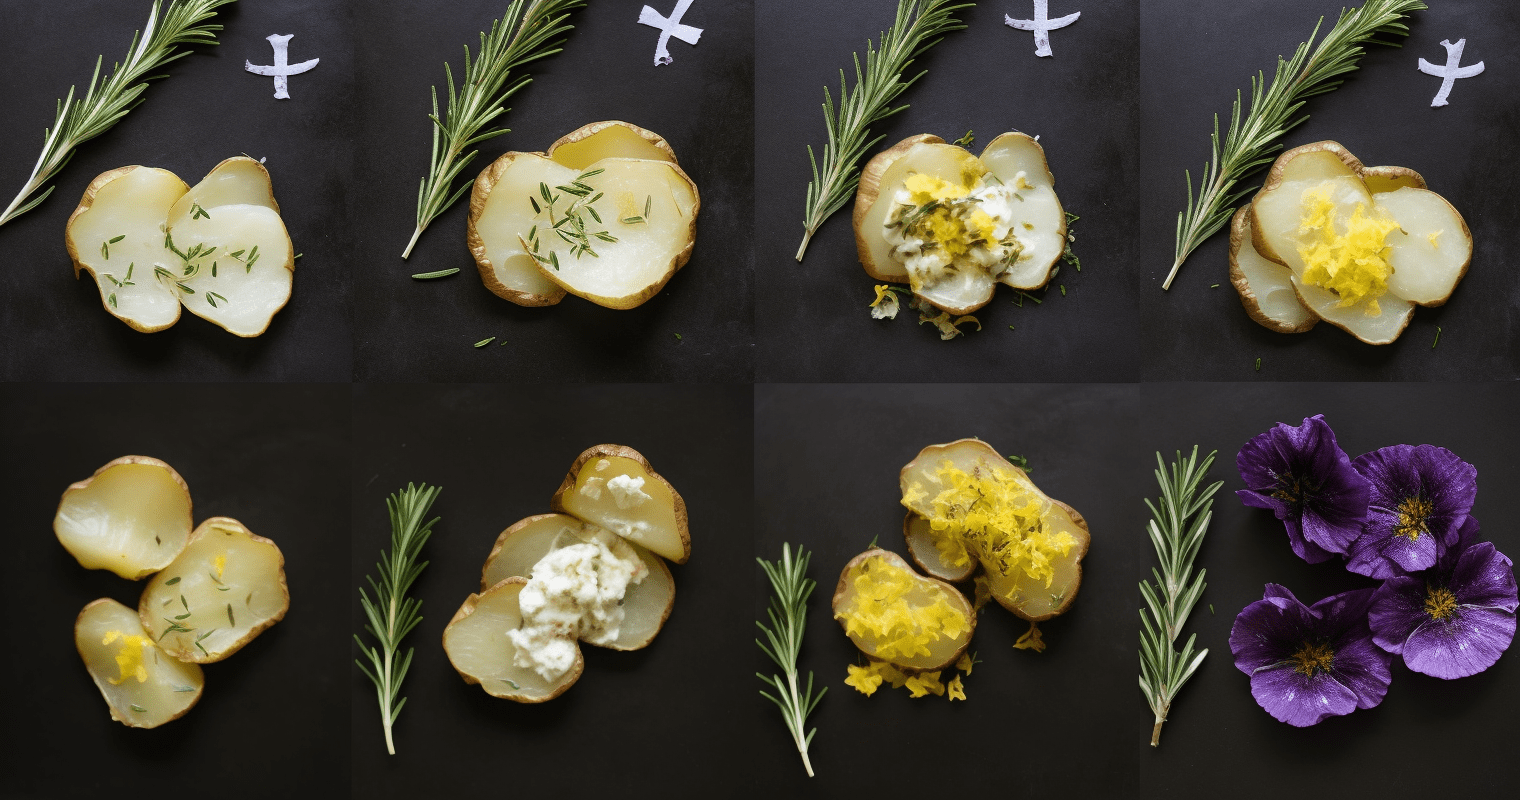 Flower-shaped Smashed Potatoes